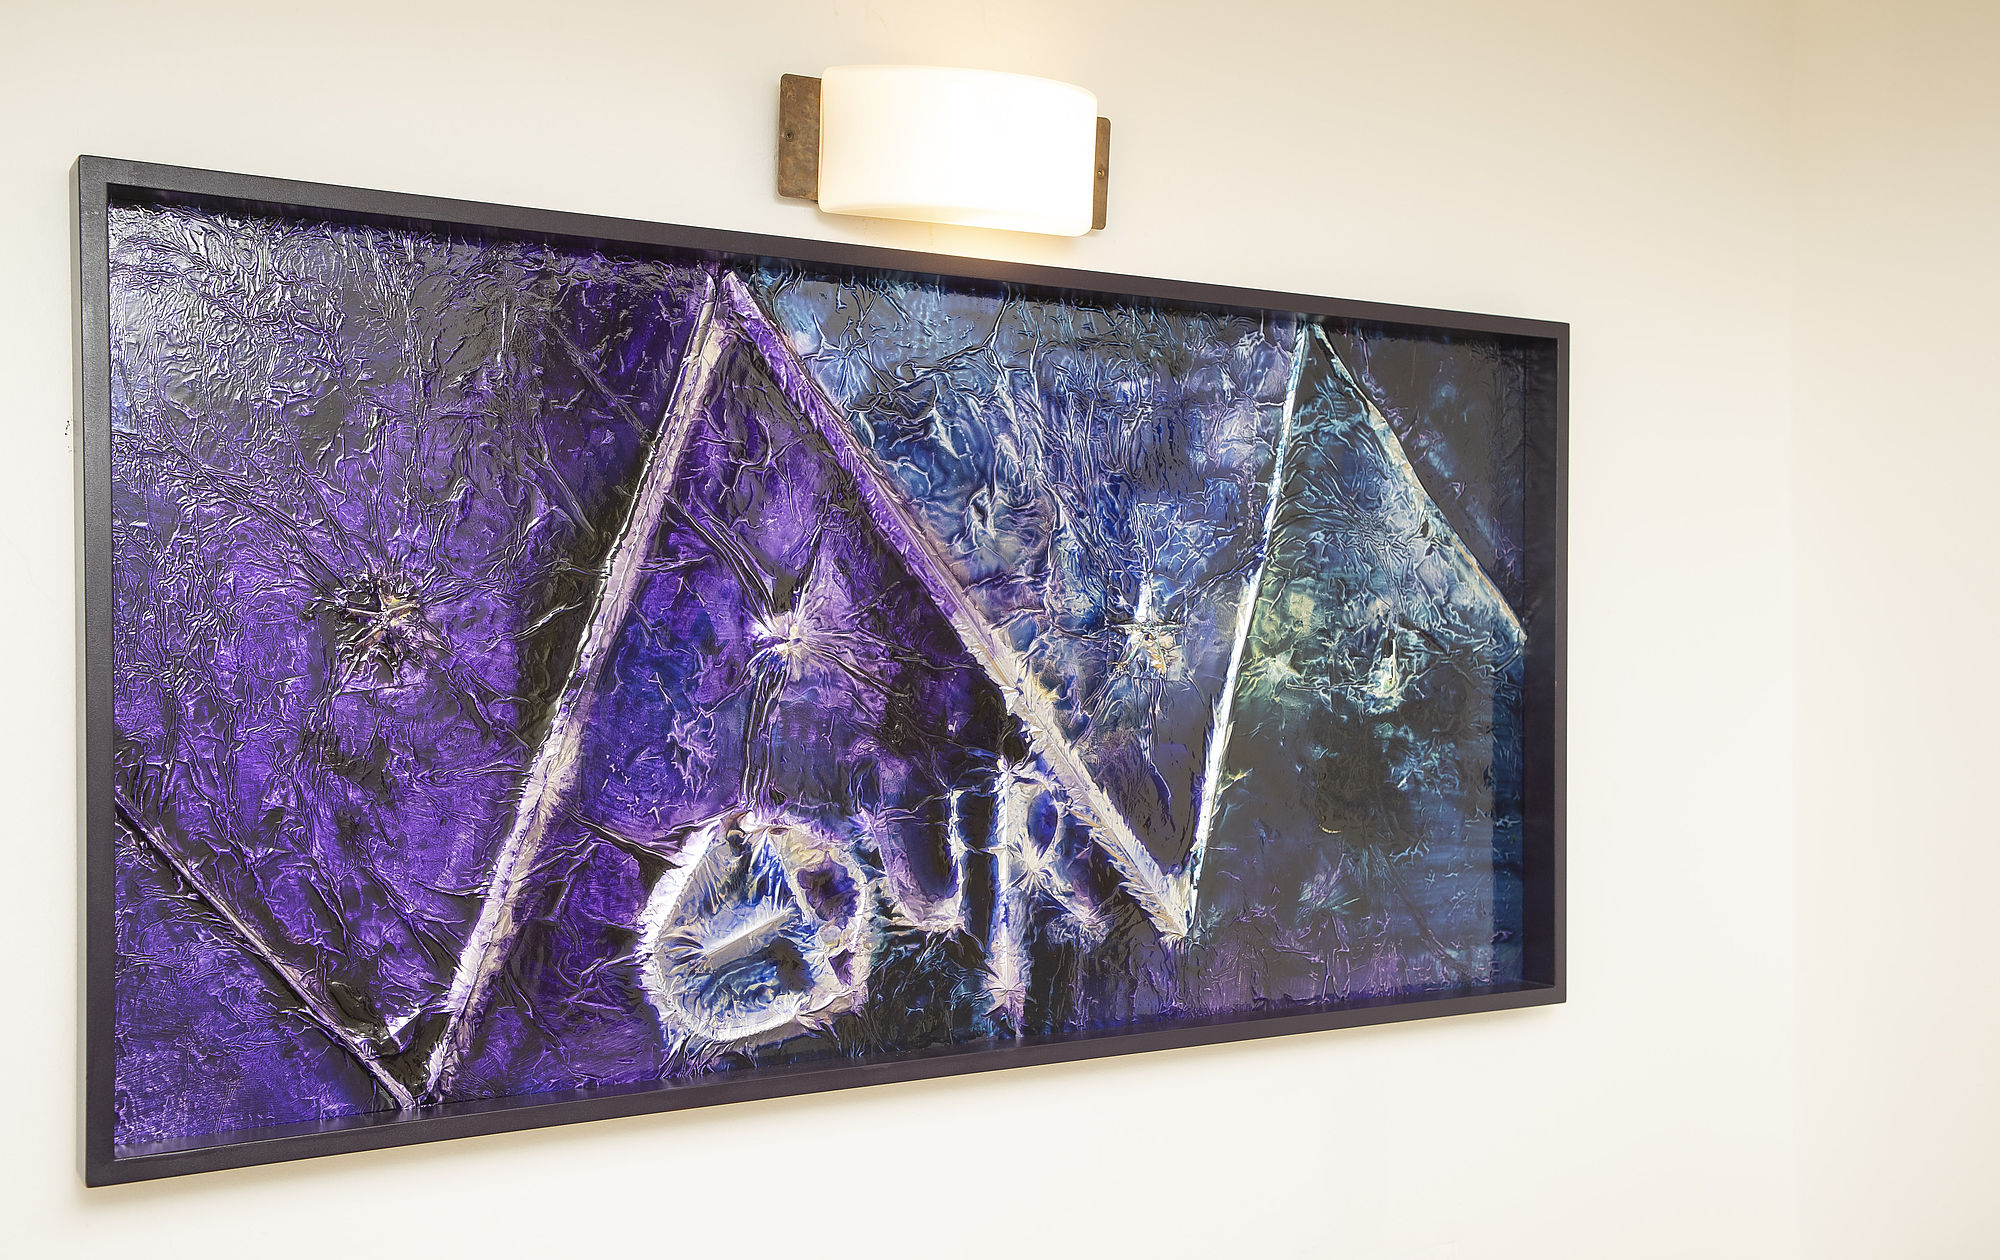 Blau-violette Collagen aus Aluminium, Metalldrähten und Acrylfarben des Künstlers Rinaldo Invernizzi